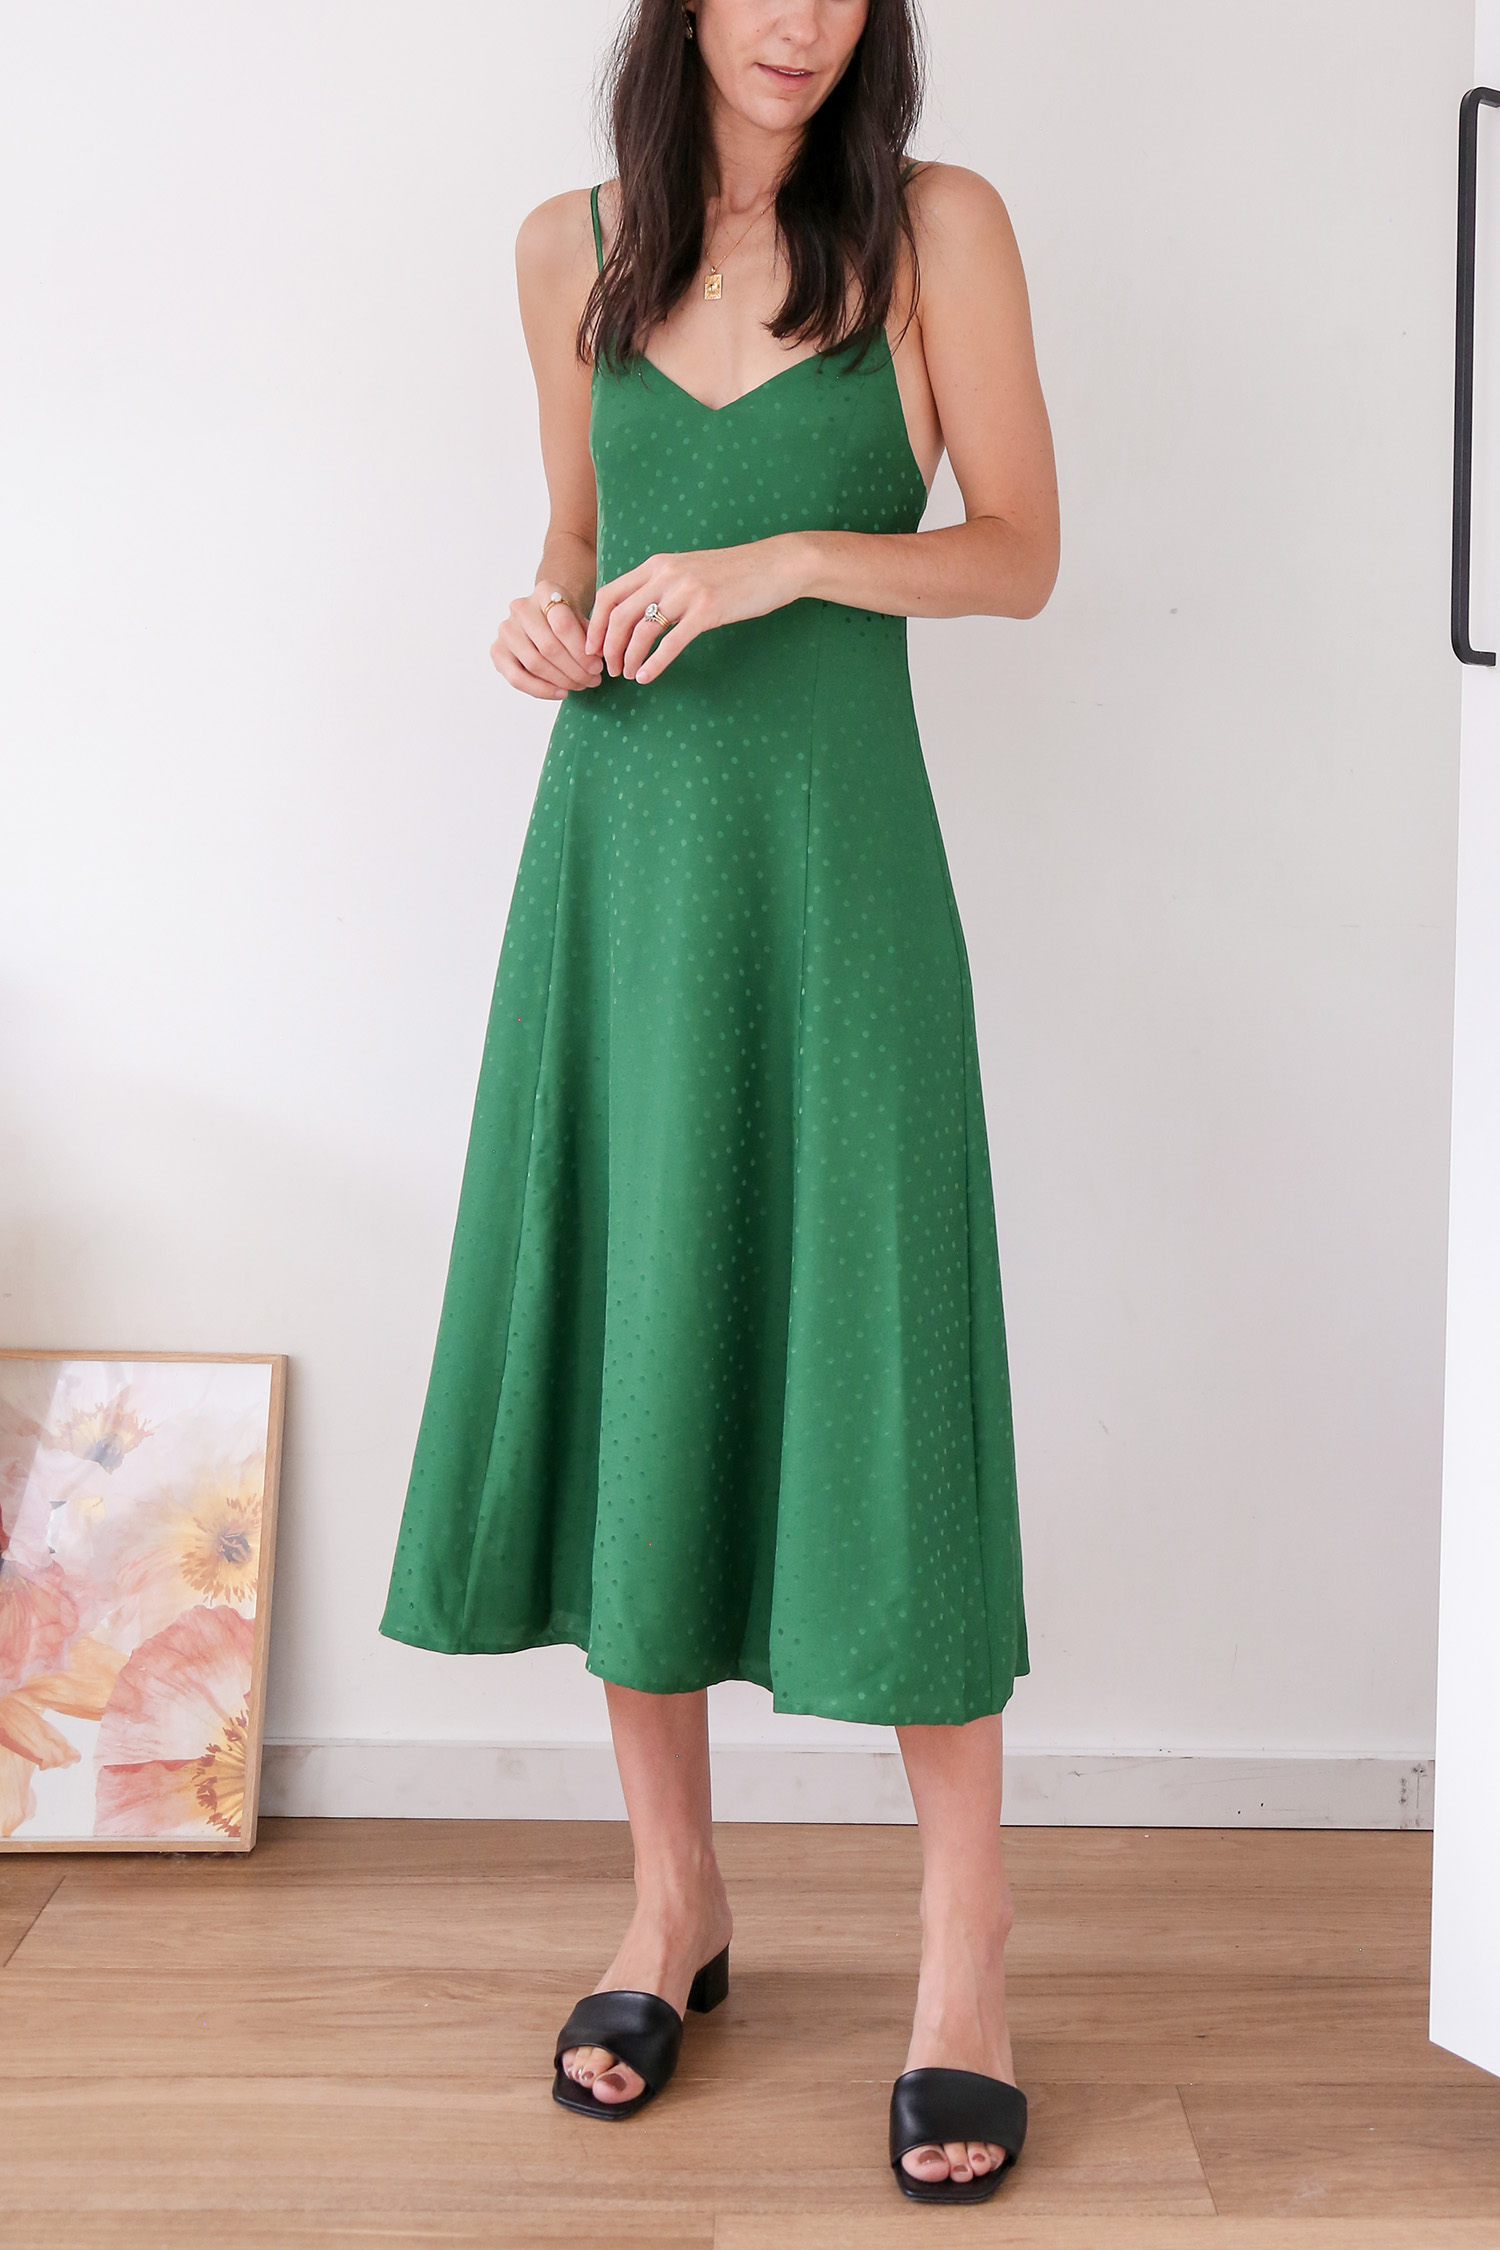 Sezane Aloise Dress in Emerald Green 